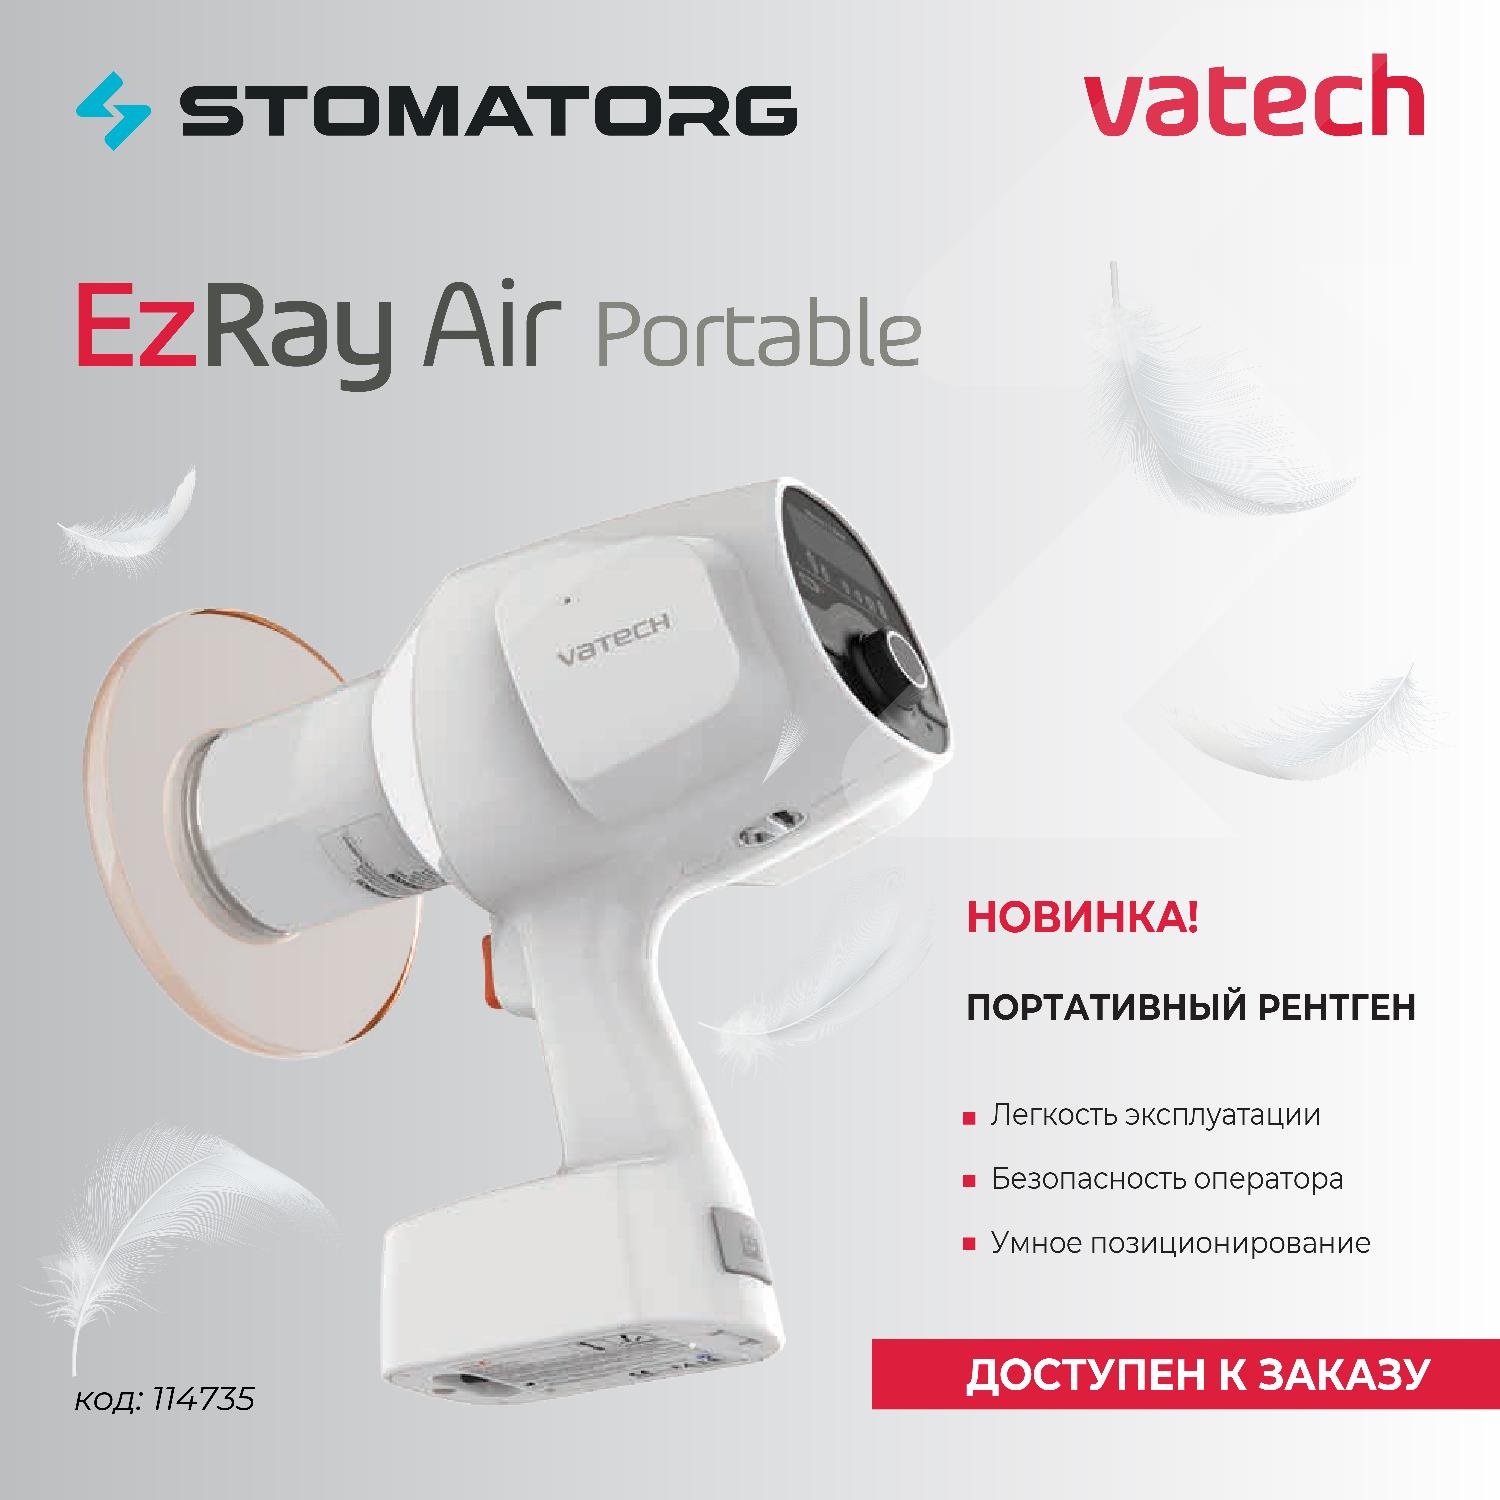 Новый портативный рентген аппарат EzRay Air Portable Vatech.